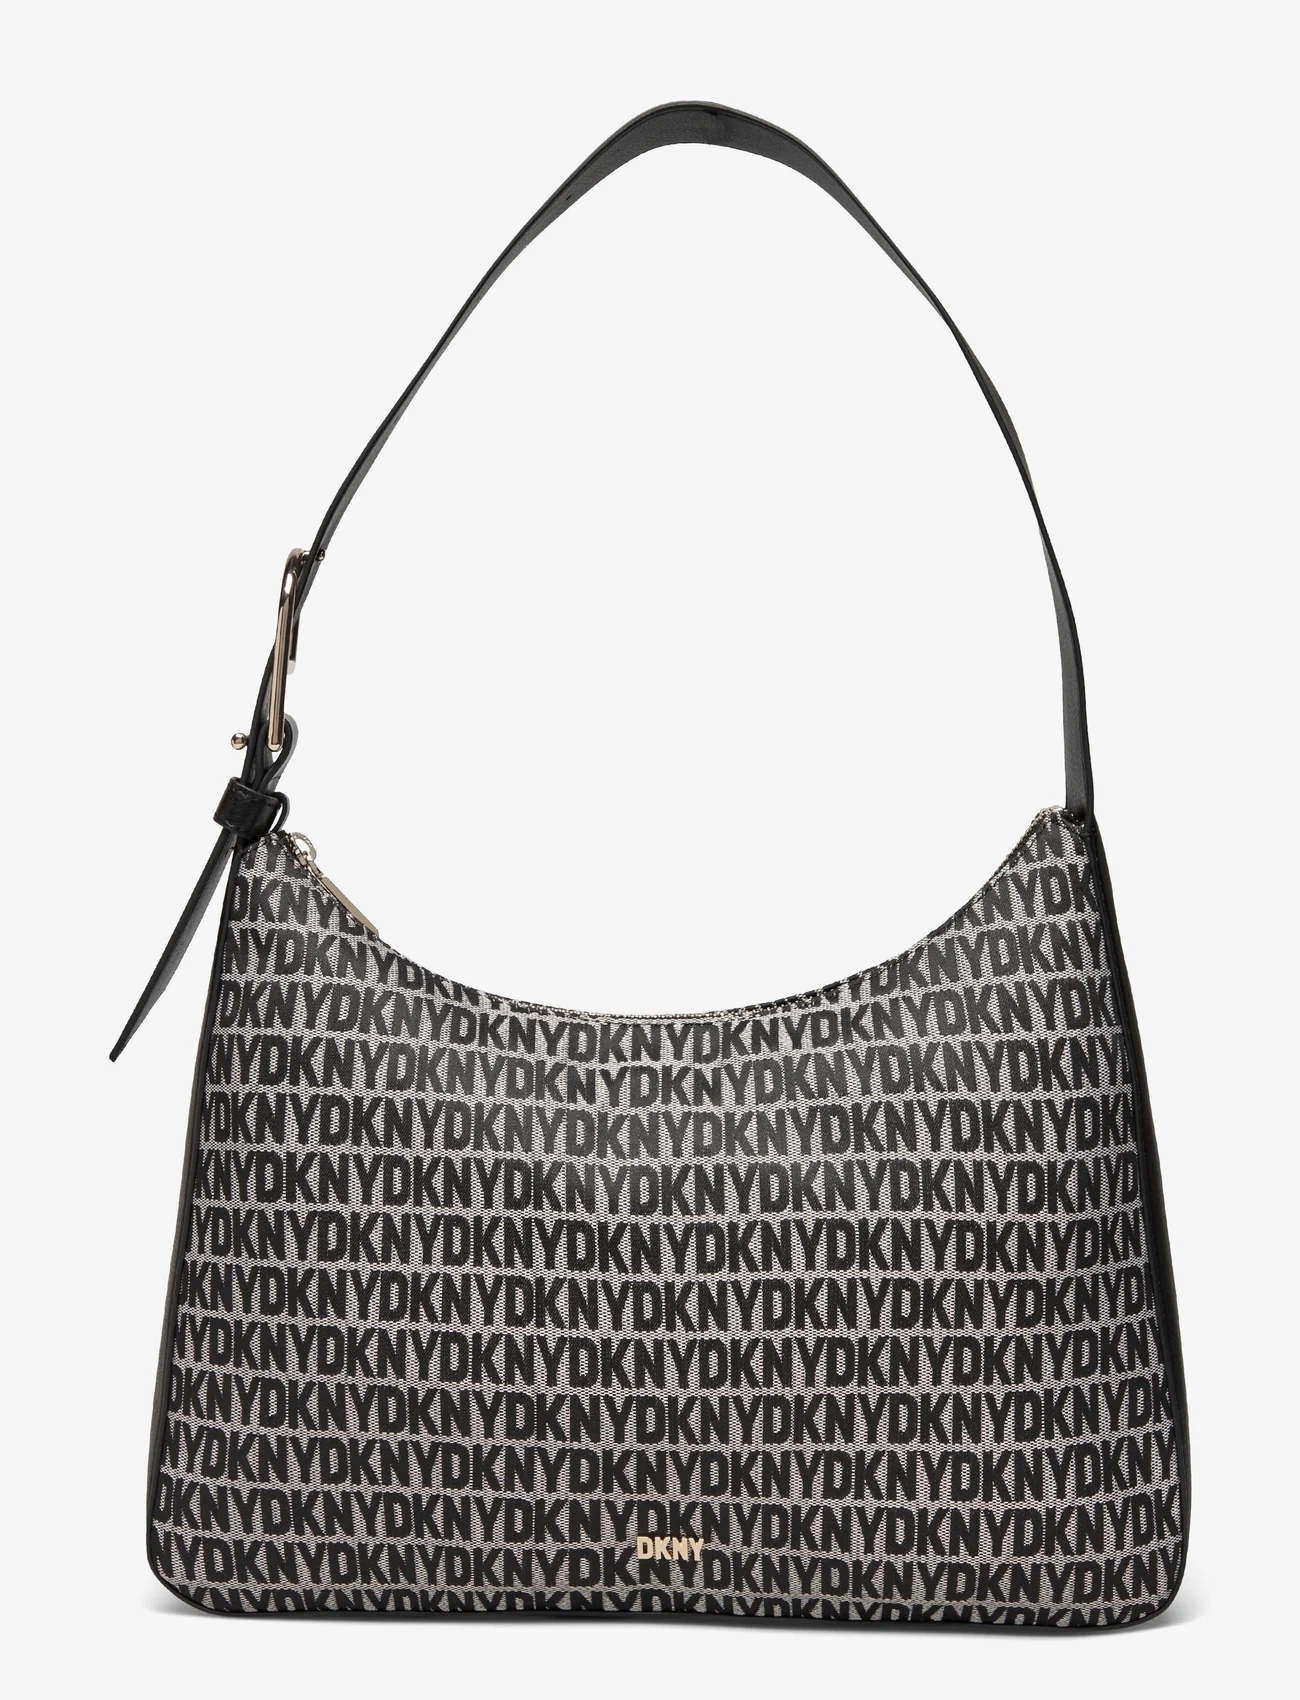 DKNY Bags - DEENA HOBO - festtøj til outletpriser - xlb - bk logo-bk - 0